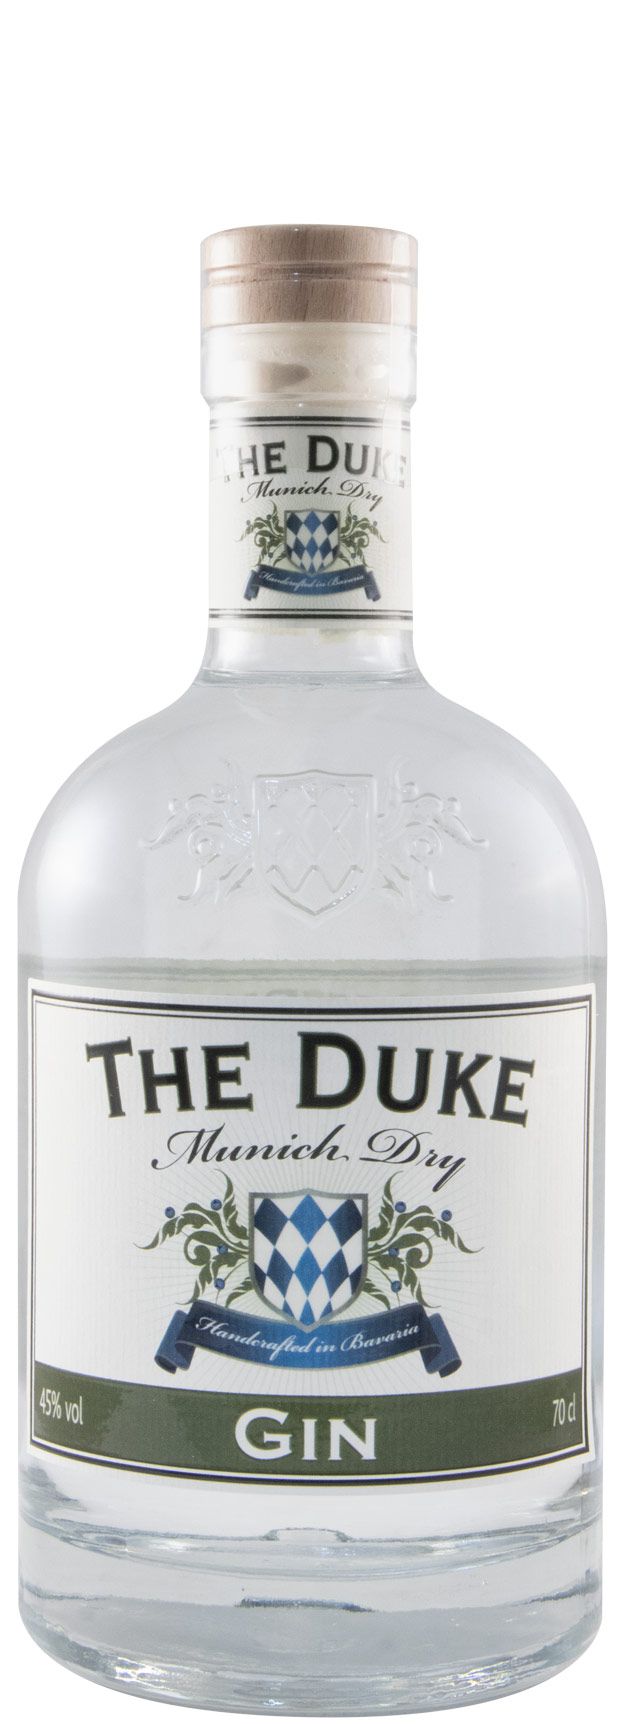 Gin The Duke Munich w/Miniature